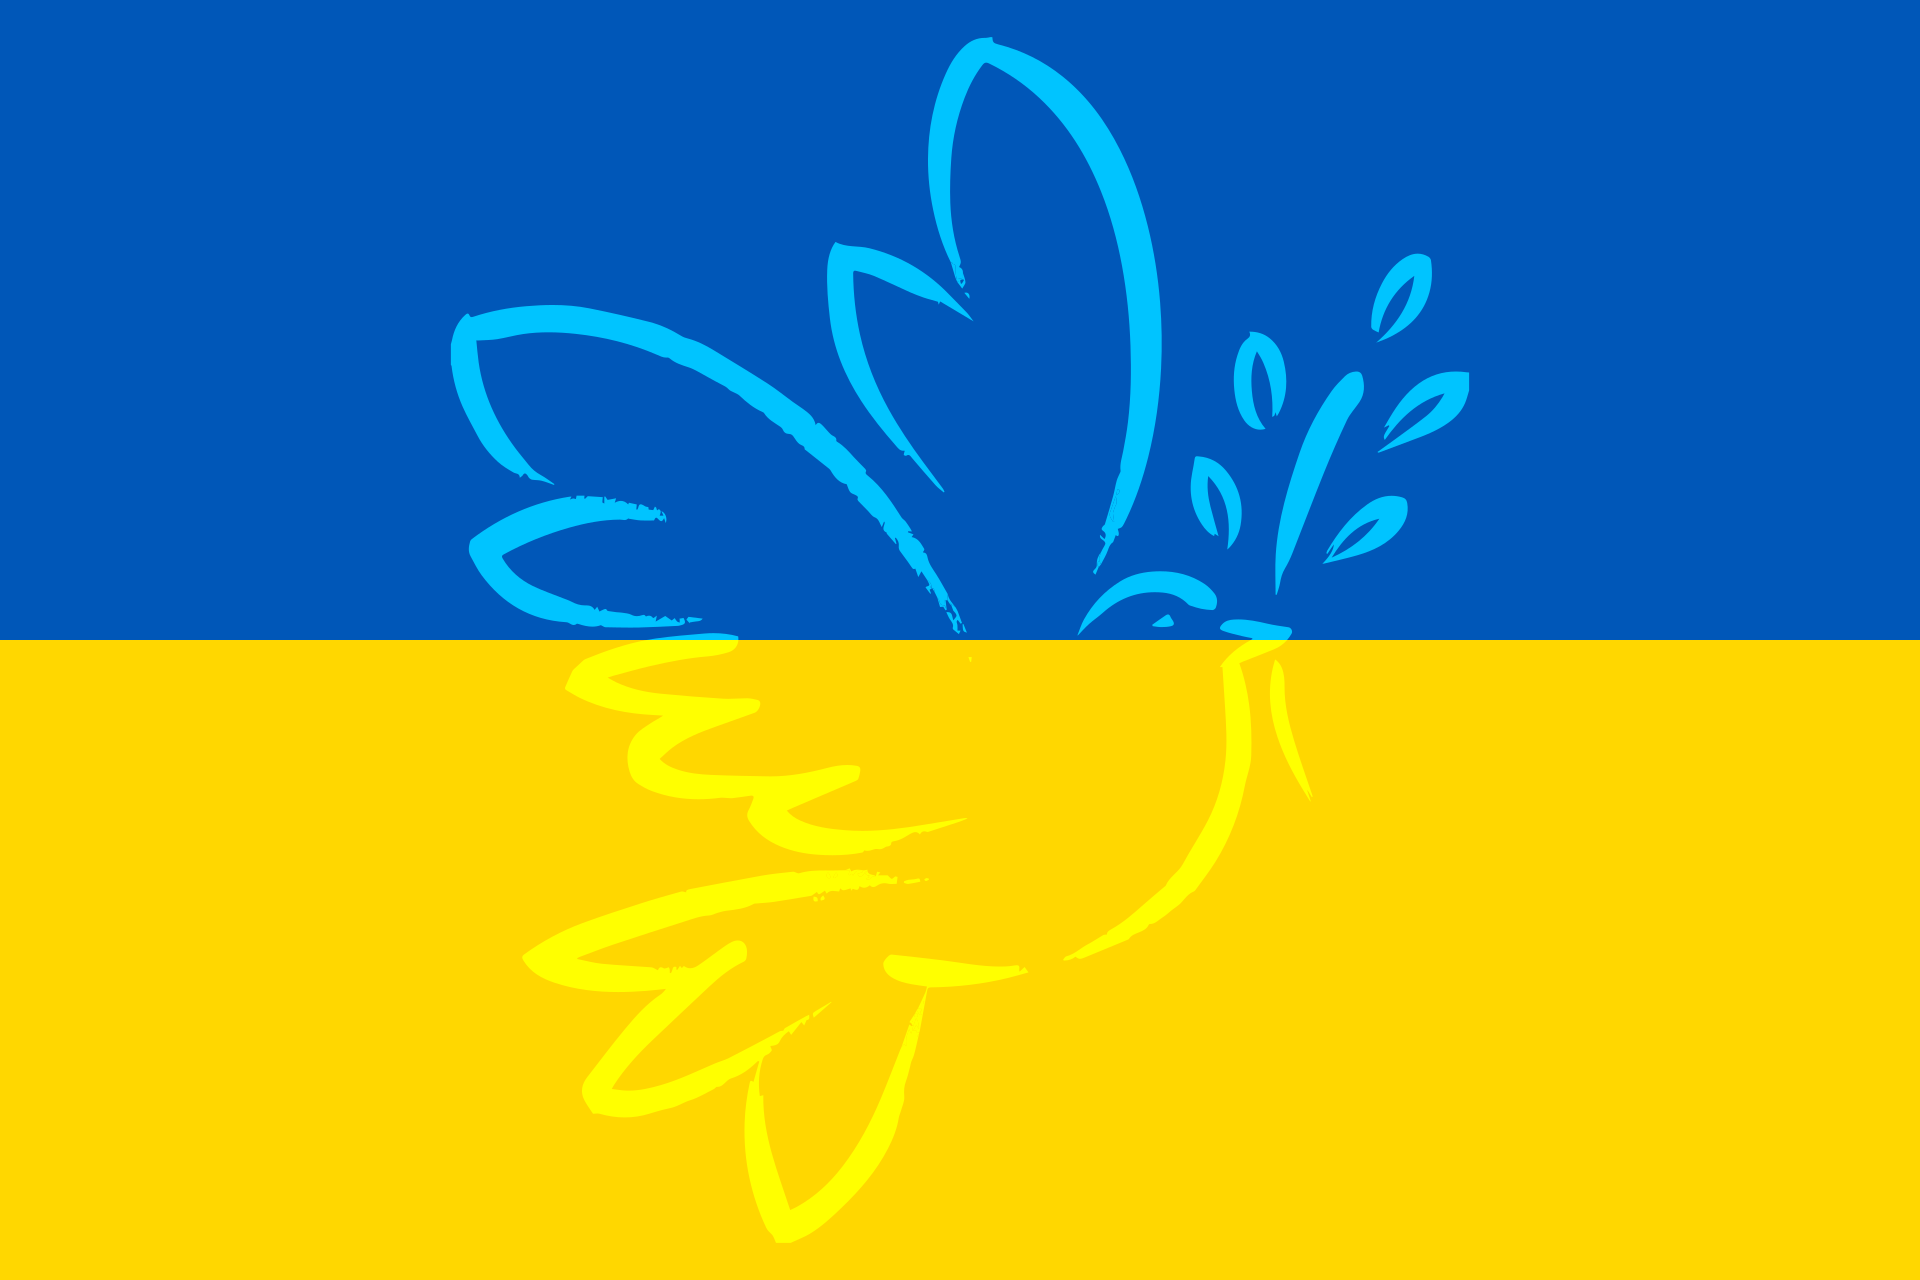 Ukraine (c) Bild von bookdragon auf Pixabay